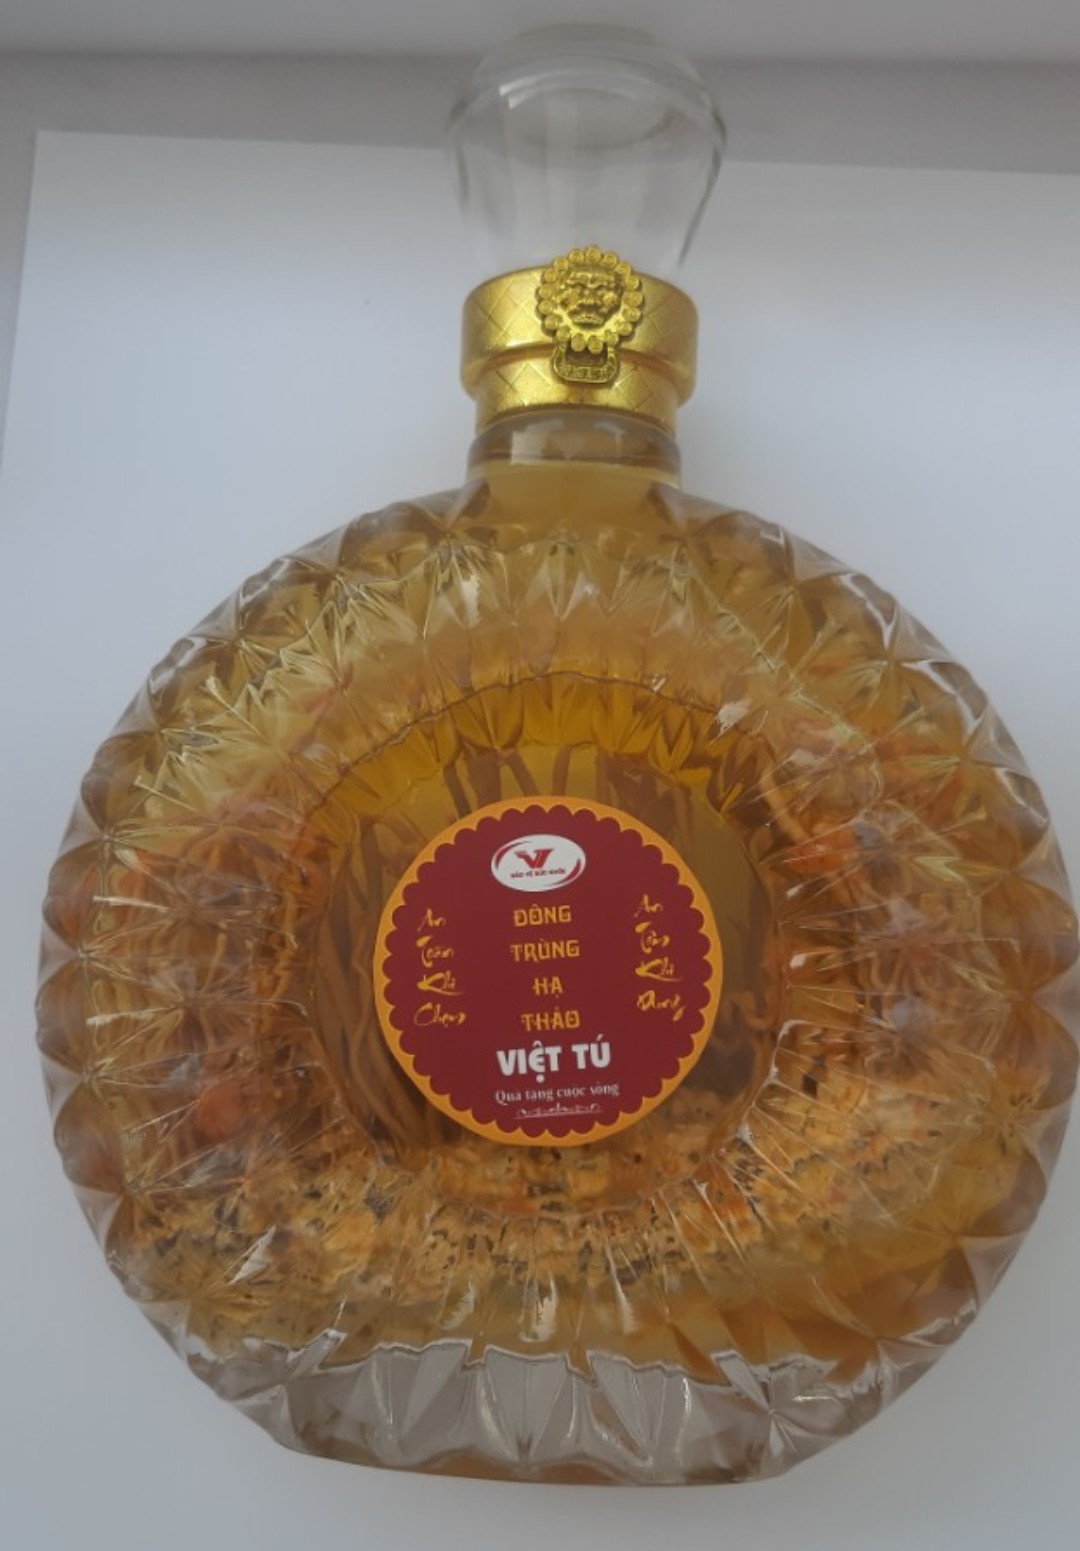 Rượu đông trùng hạ thảo Việt Tú